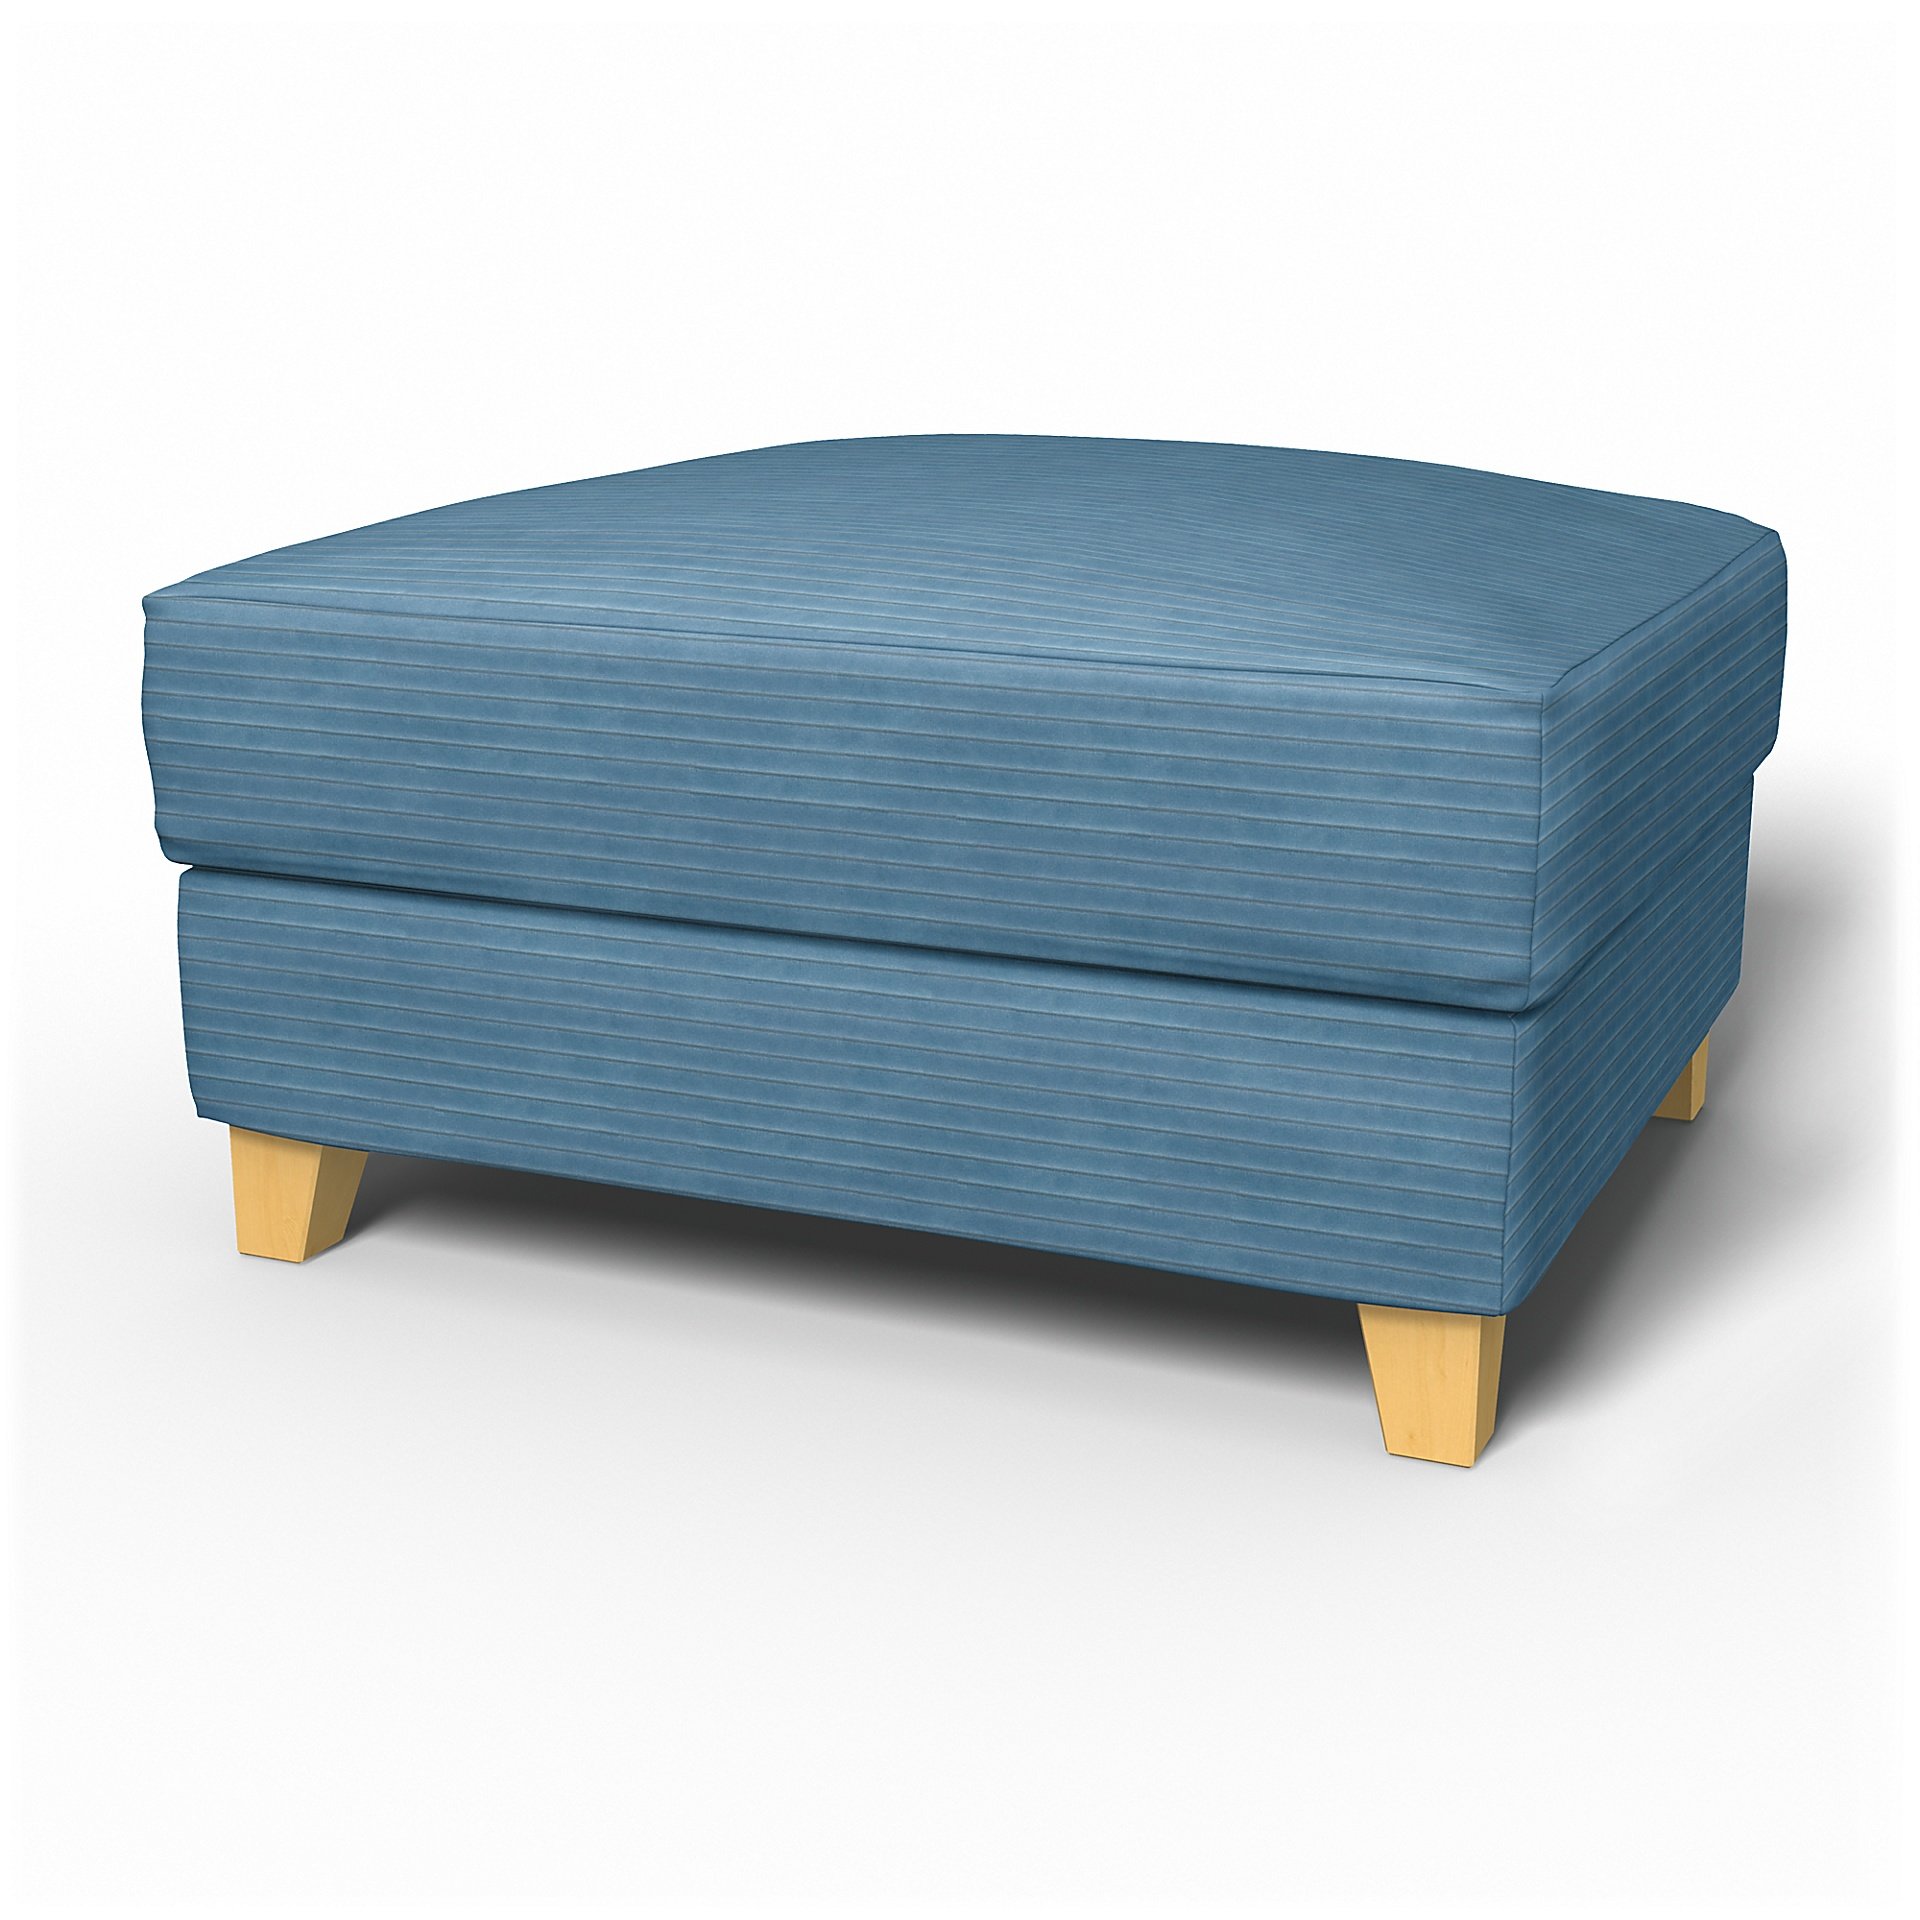 IKEA - Backa Footstool Cover, Sky Blue, Corduroy - Bemz